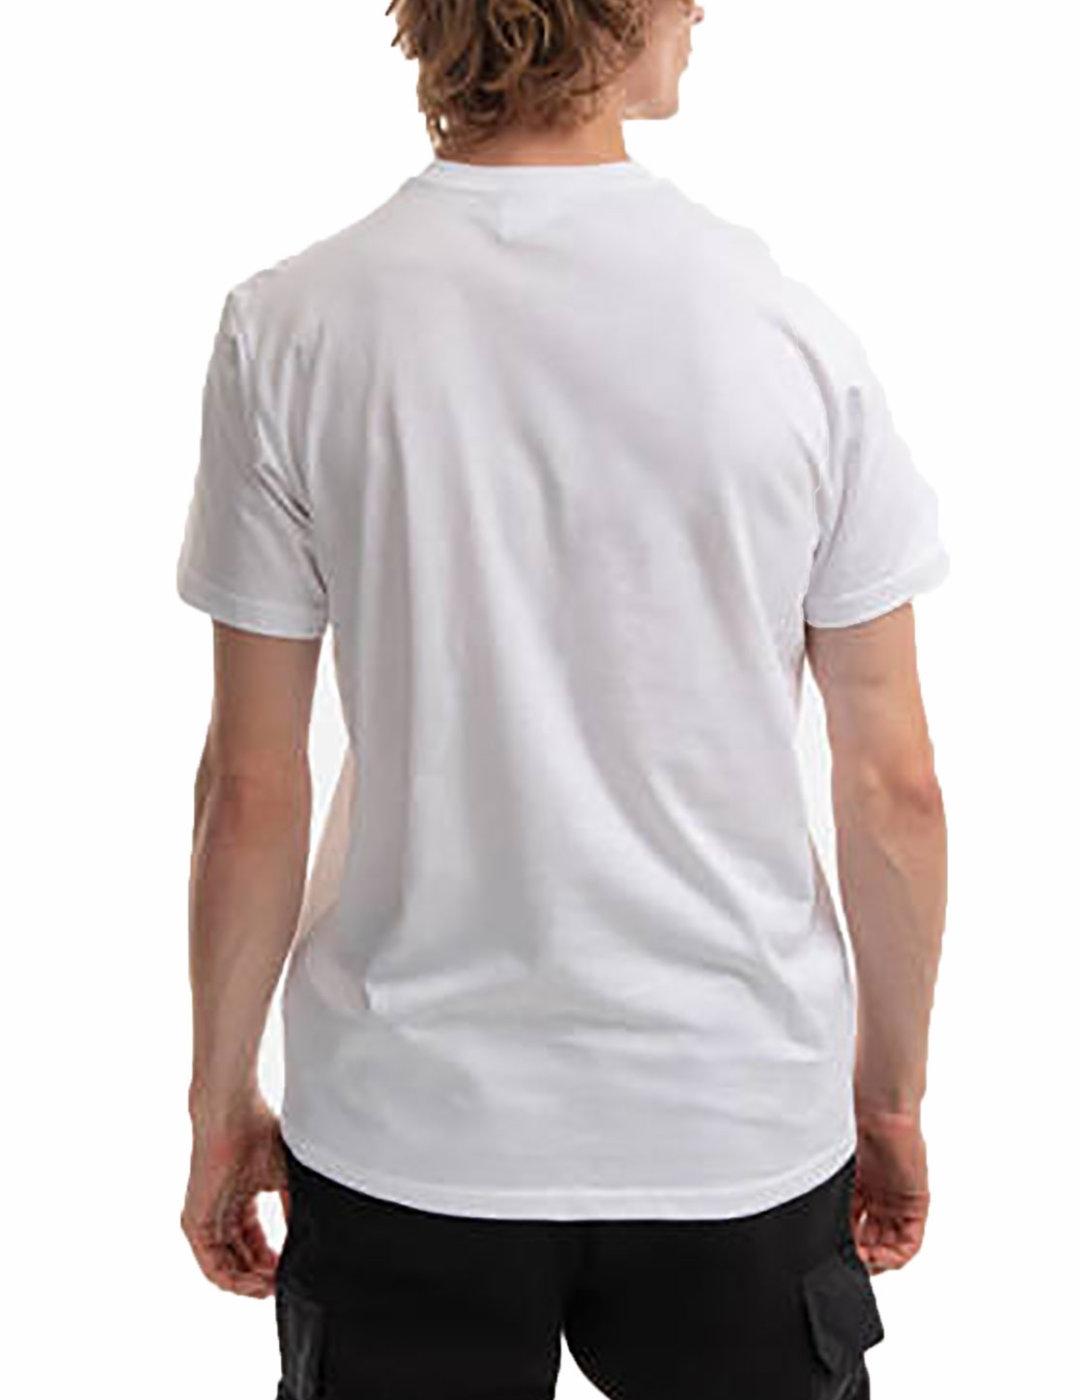 Camiseta Helly Hansen Box blanco de manga corta para hombre